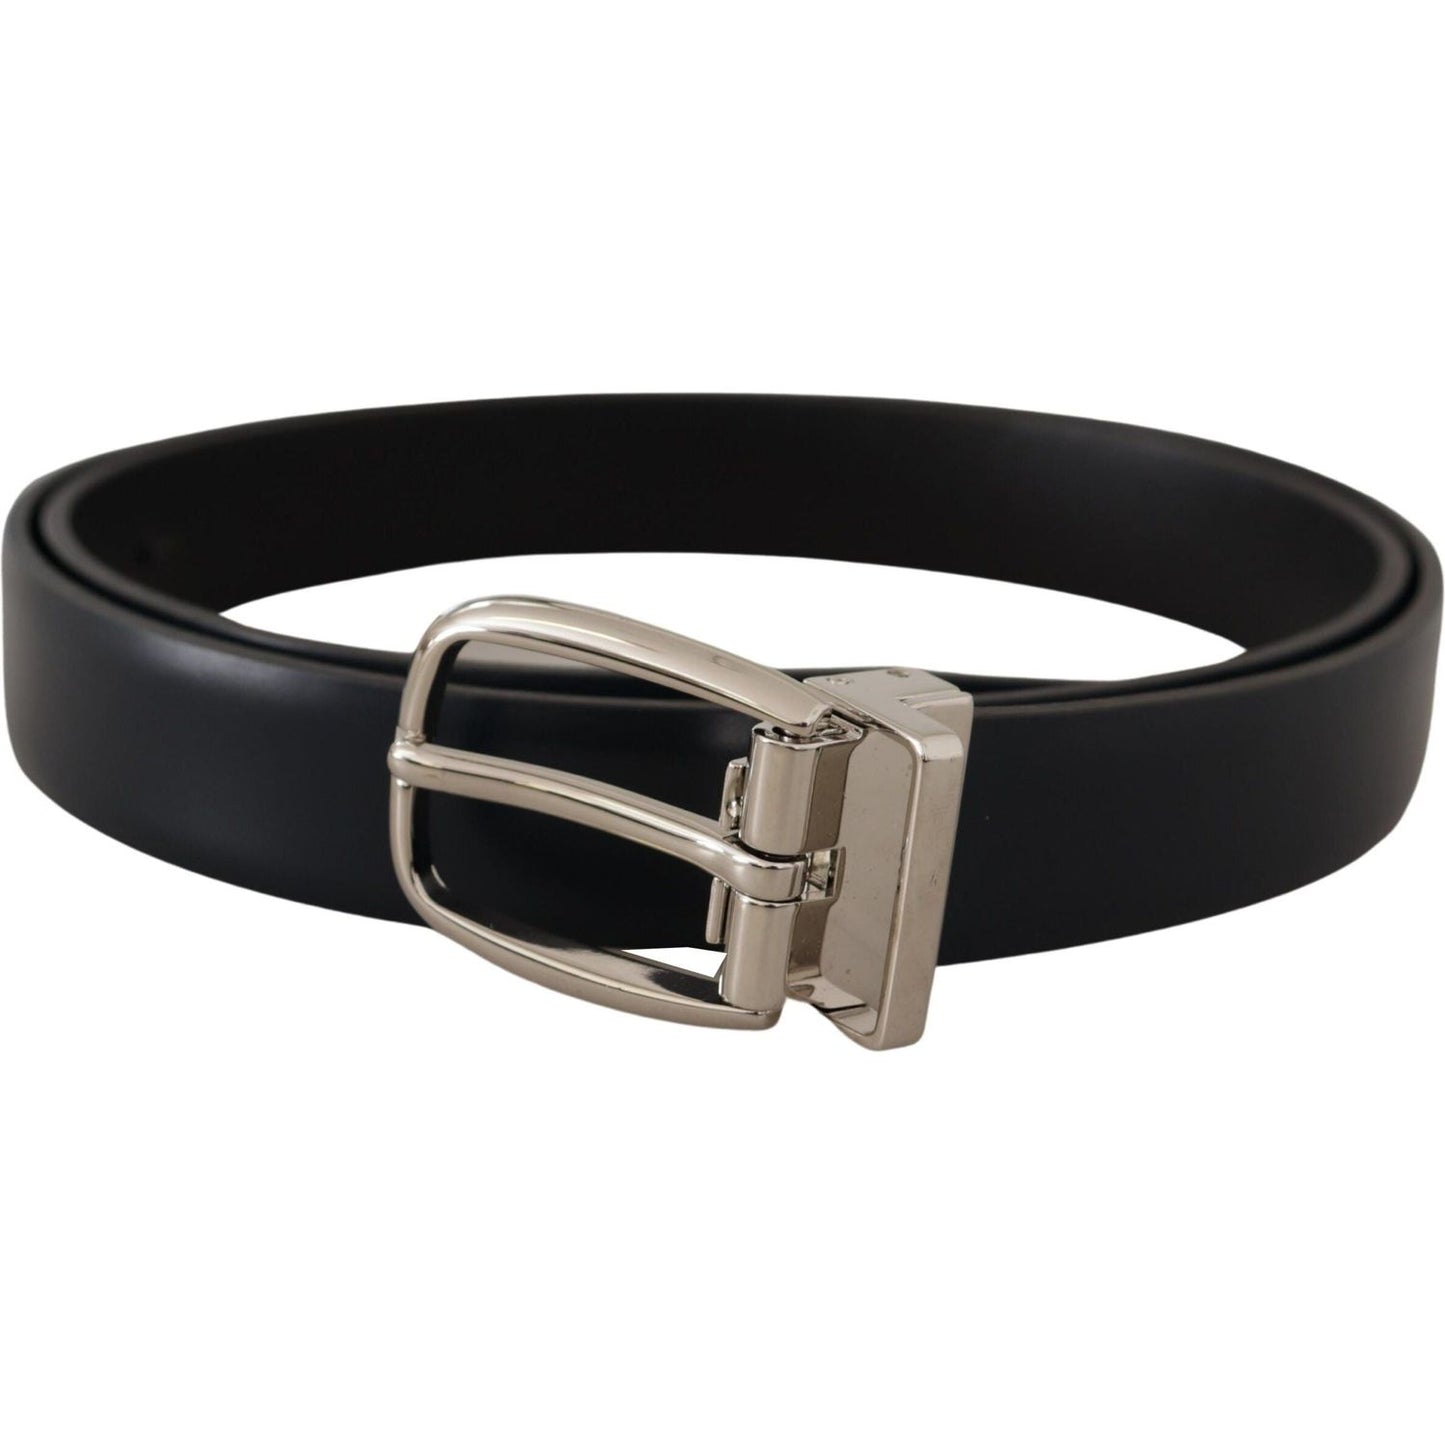 Dolce & Gabbana Elegant Black Leather Belt with Silver Buckle black-leather-formal-silver-metal-buckle-belt